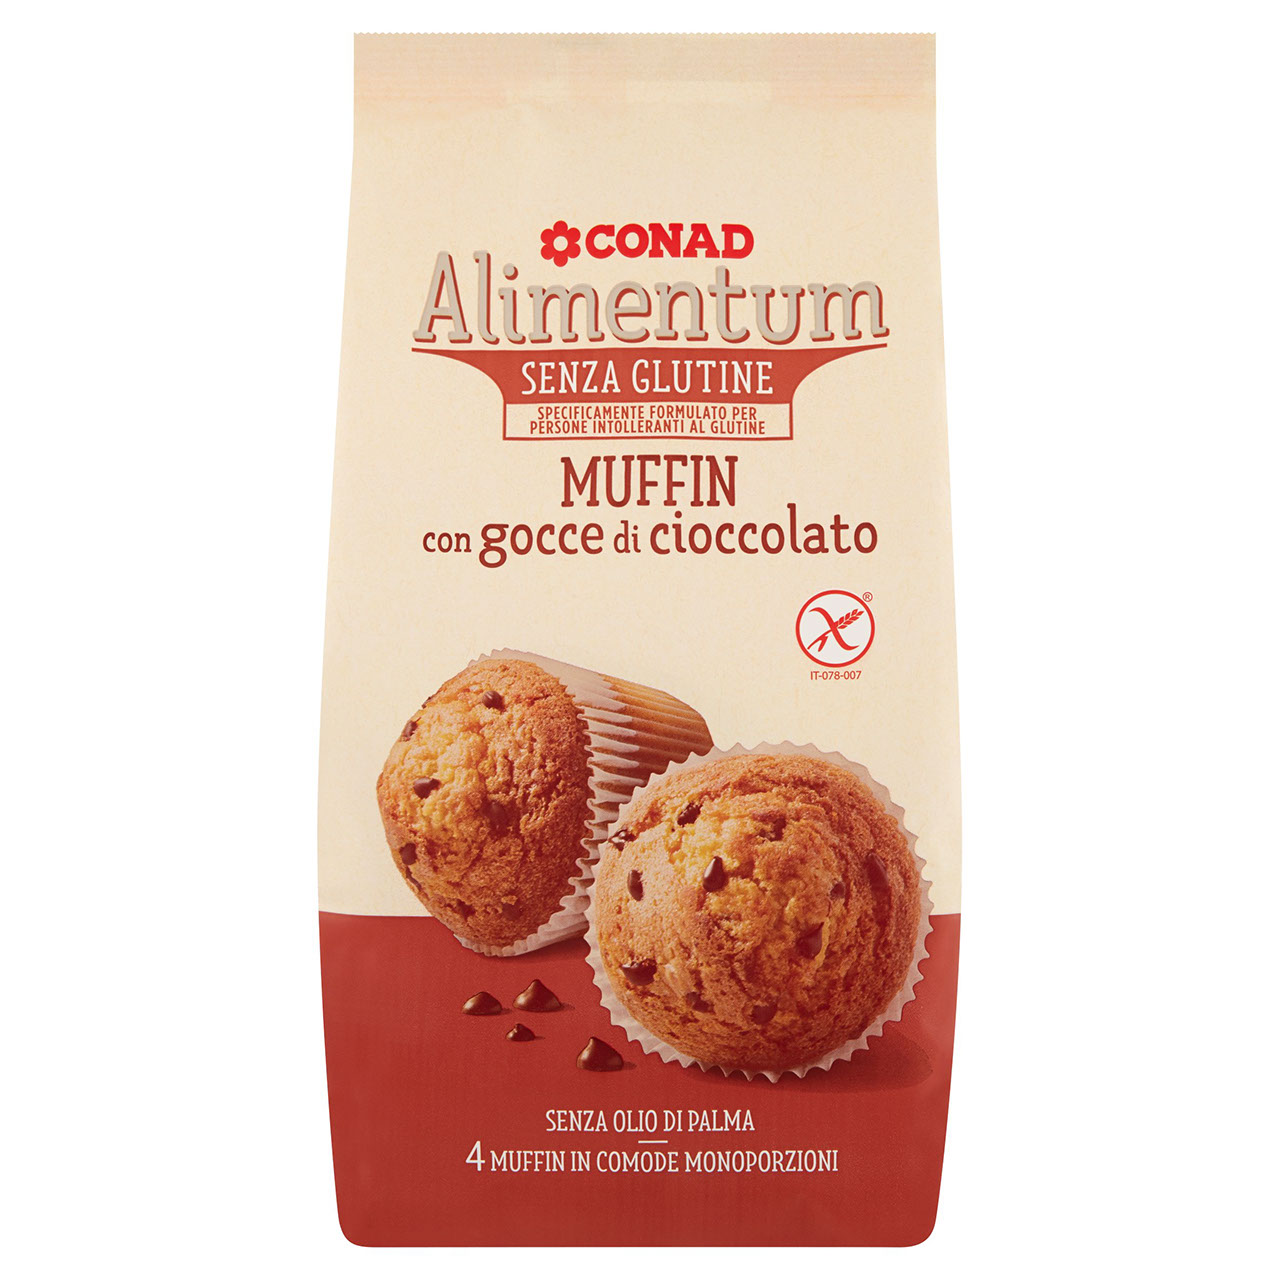 Muffin Senza Glutine al Cioccolato Alimentum Conad